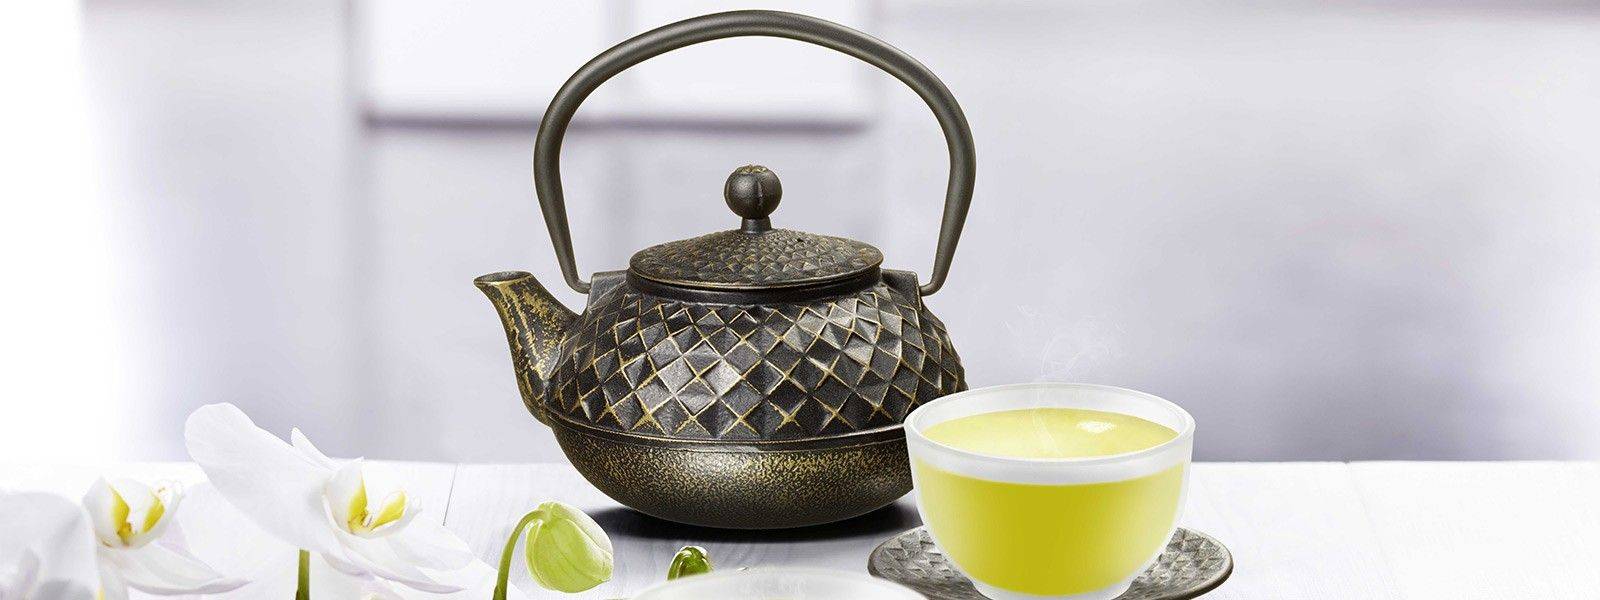 Gusseiserne Teekanne in asiatischer Optik mit dazugehörigem Teebecher